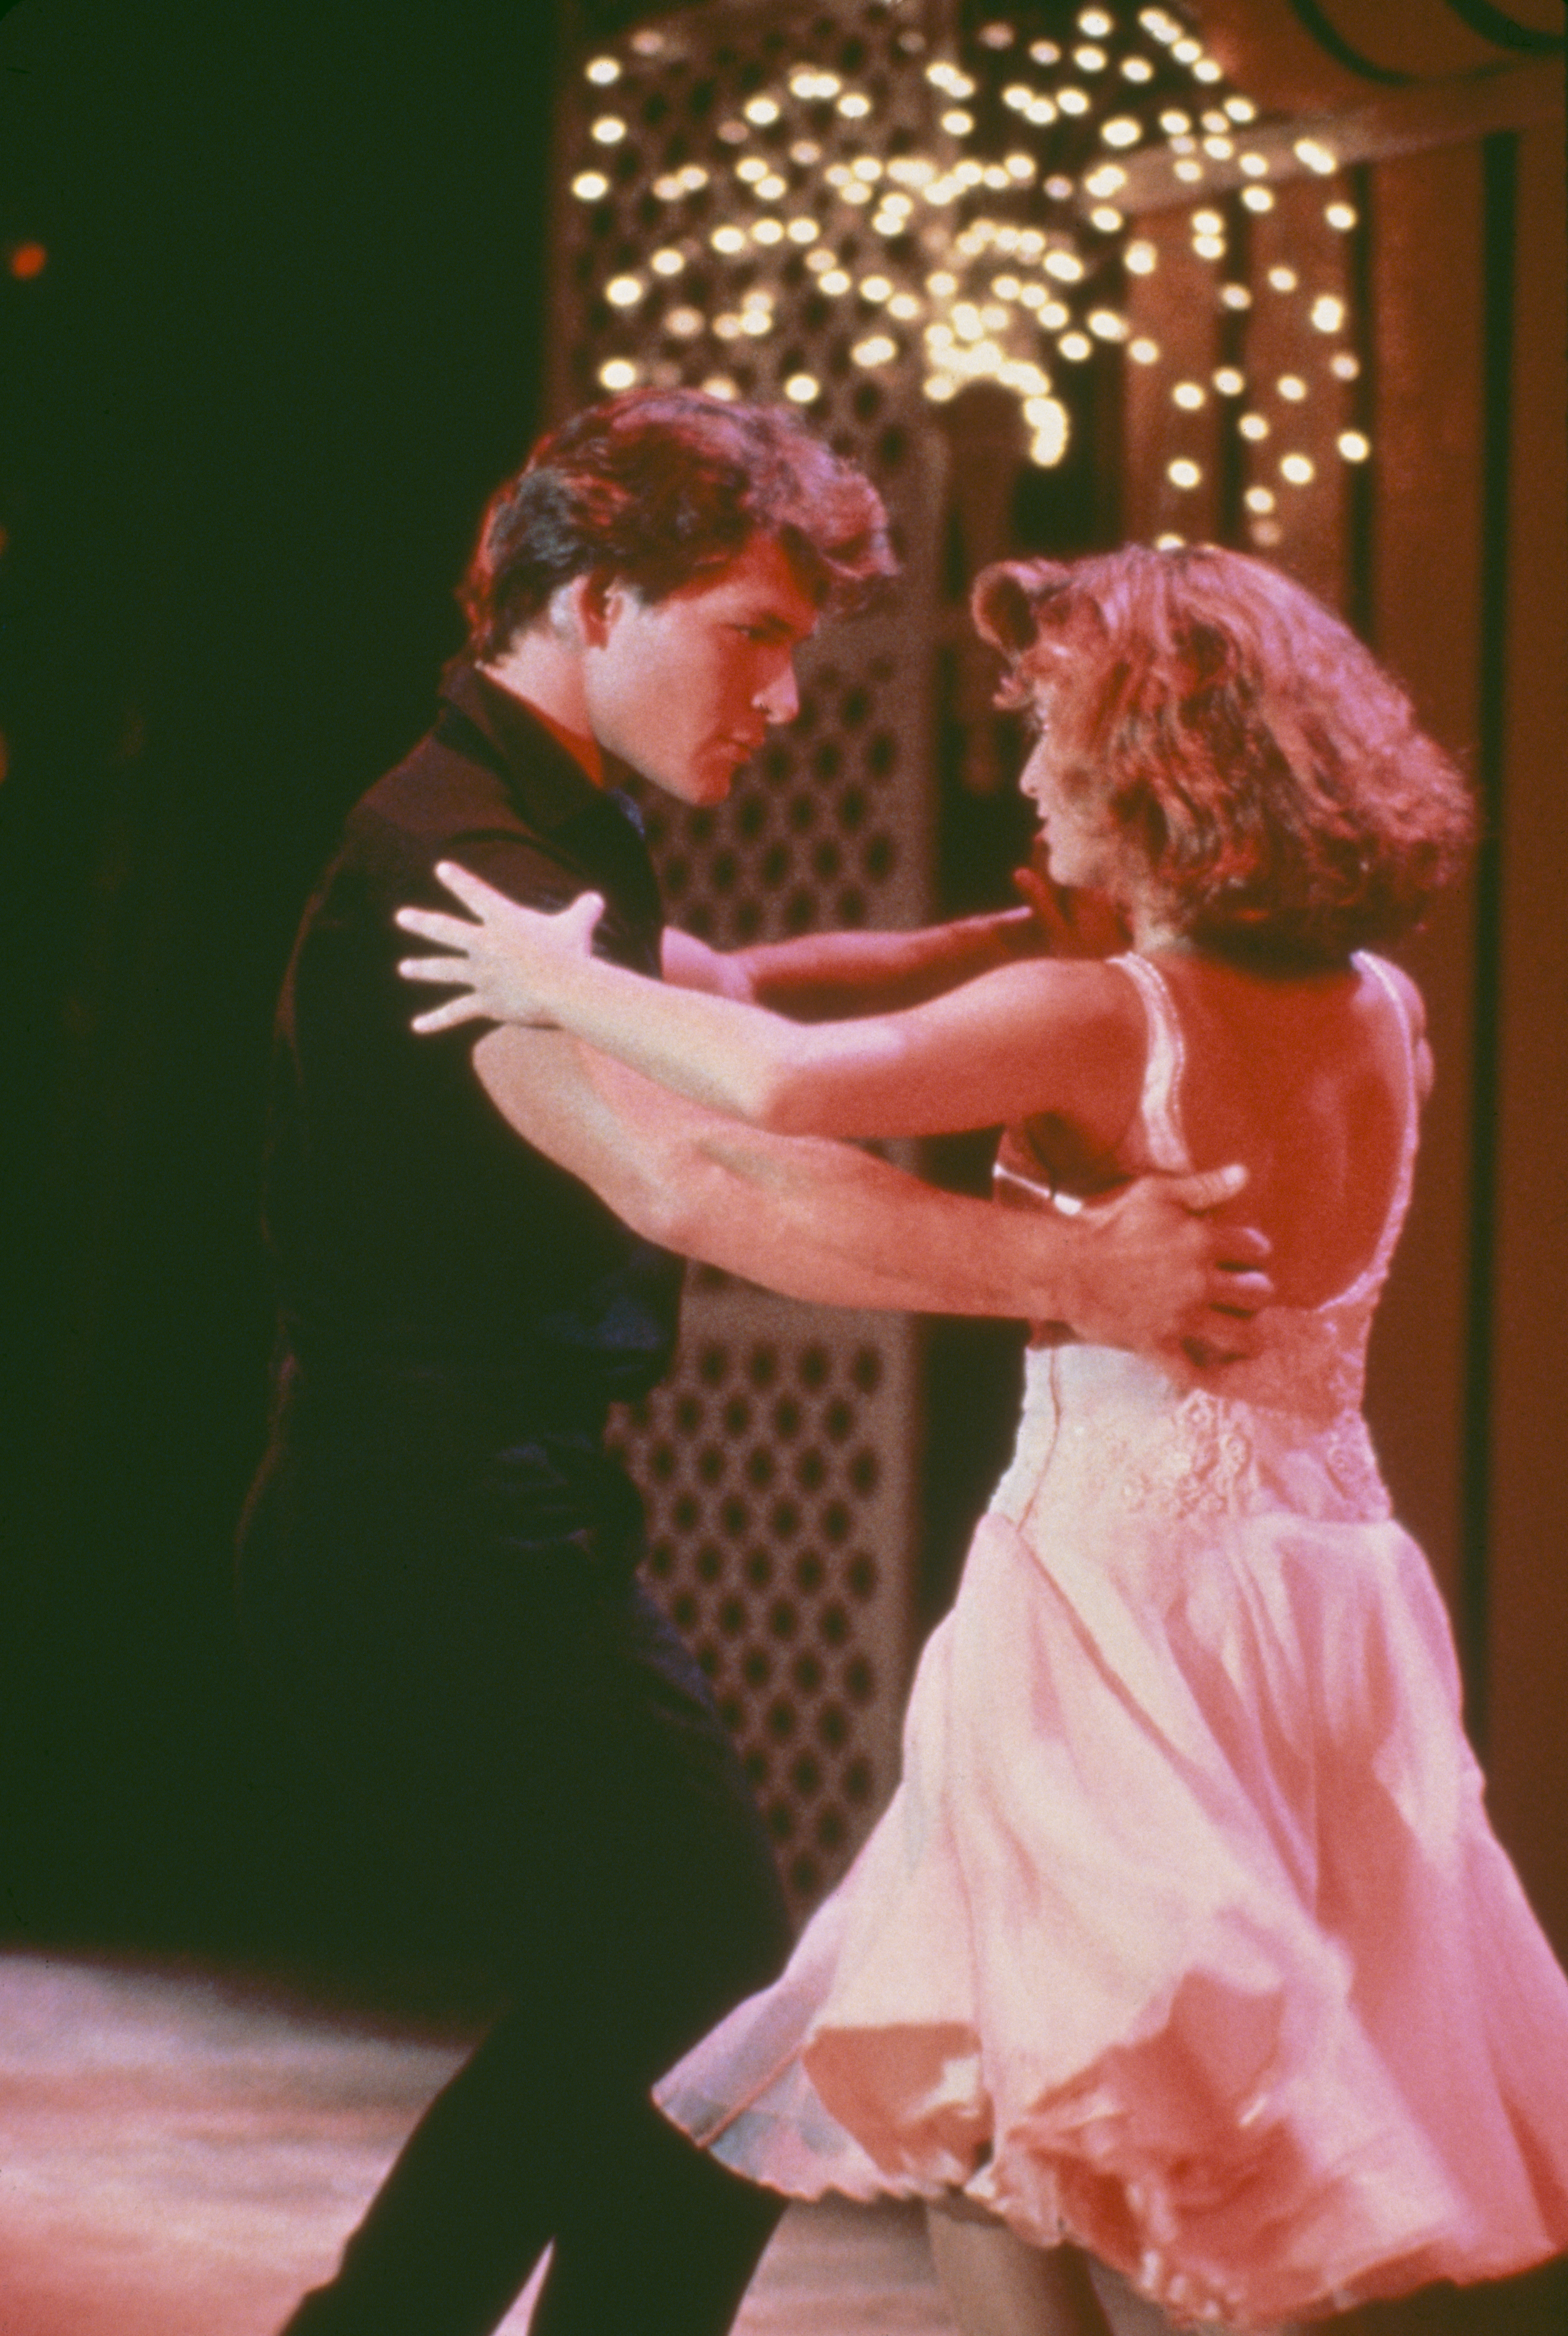 Patrick Swayze et Jennifer Grey sur le plateau de tournage de "Dirty Dancing", 1987. | Source : Getty Images